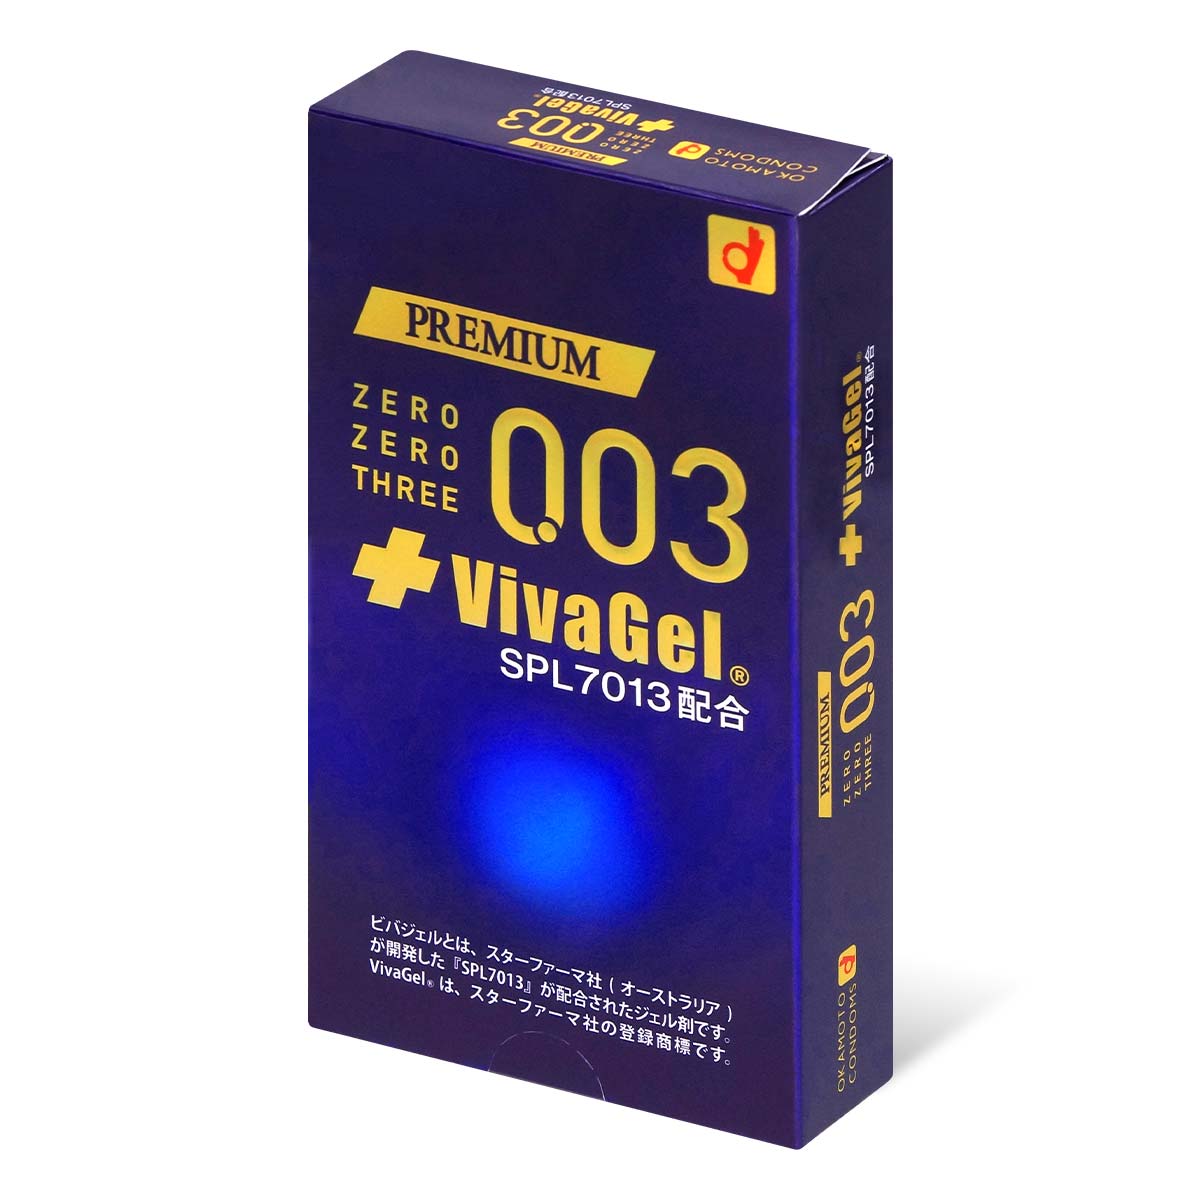 冈本。零零三 0.03 Vivagel (日本版) 10 片装 乳胶安全套-p_1